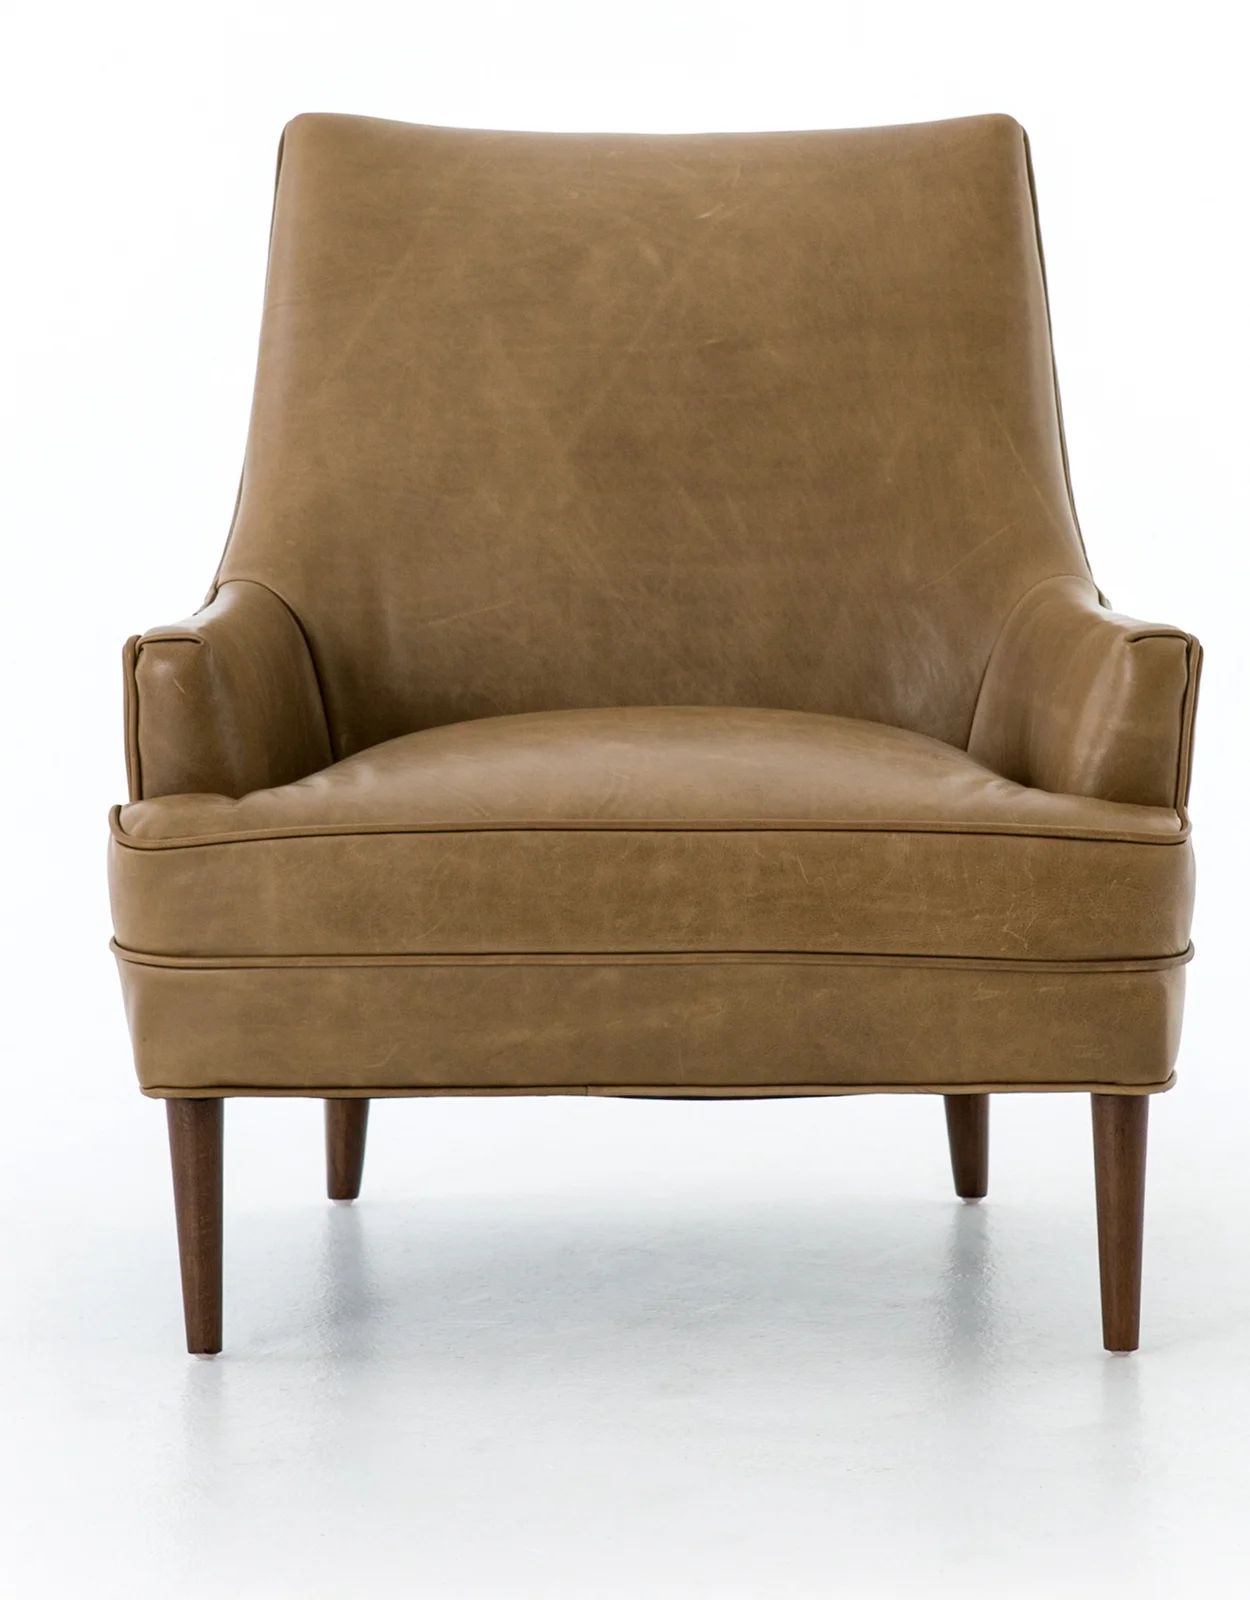 Danya Solid Wood Genuine Leather Armchair | Wayfair North America